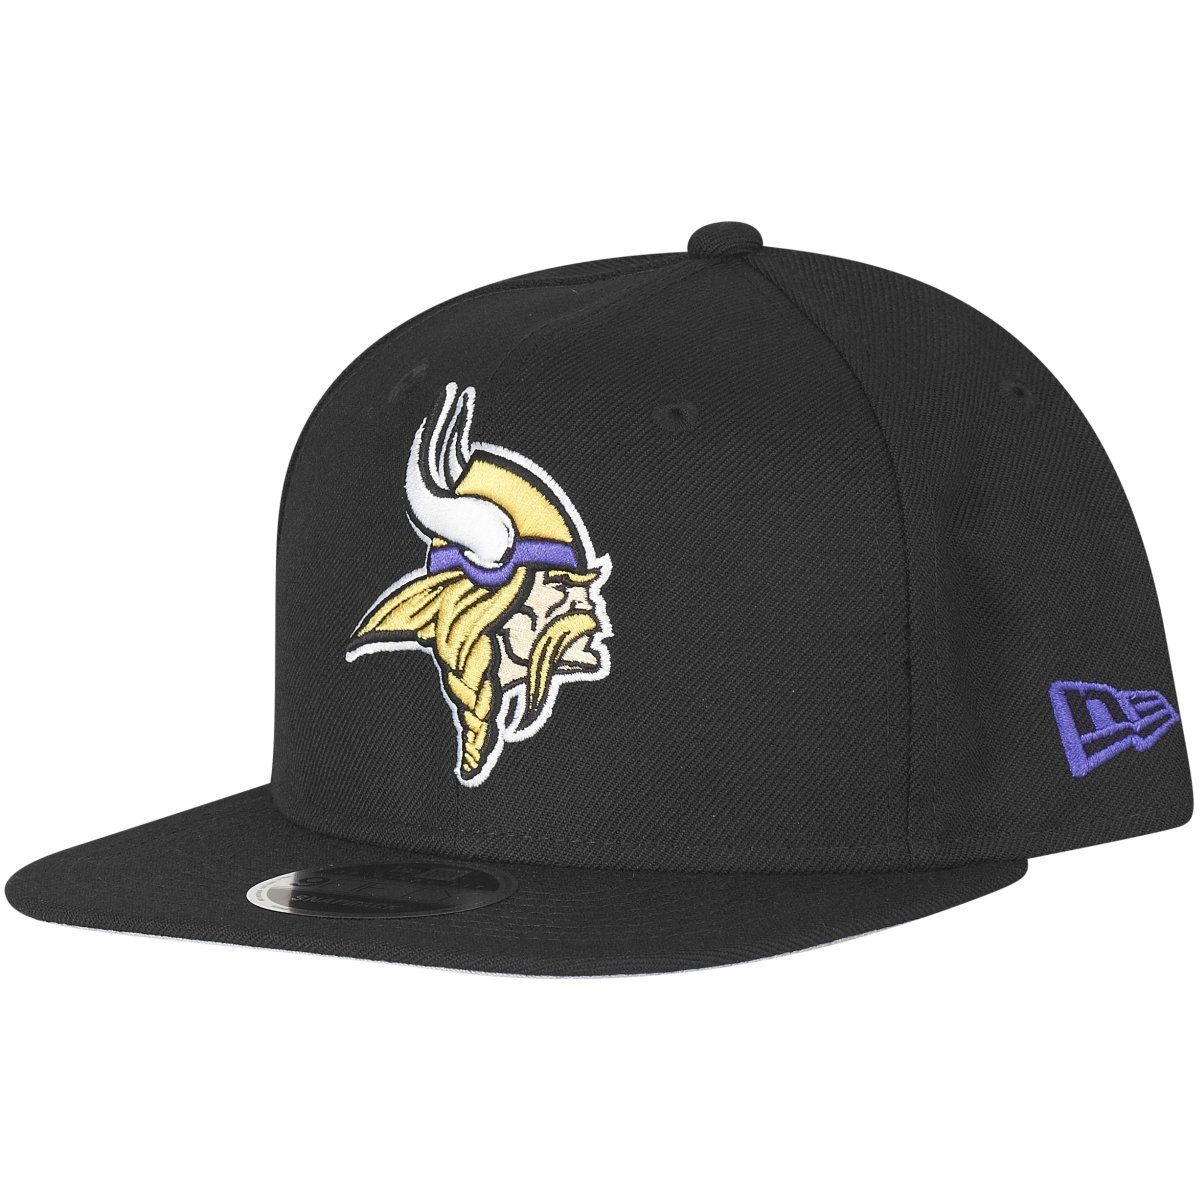 New Era Snapback Cap OriginalFit Minnesota Vikings